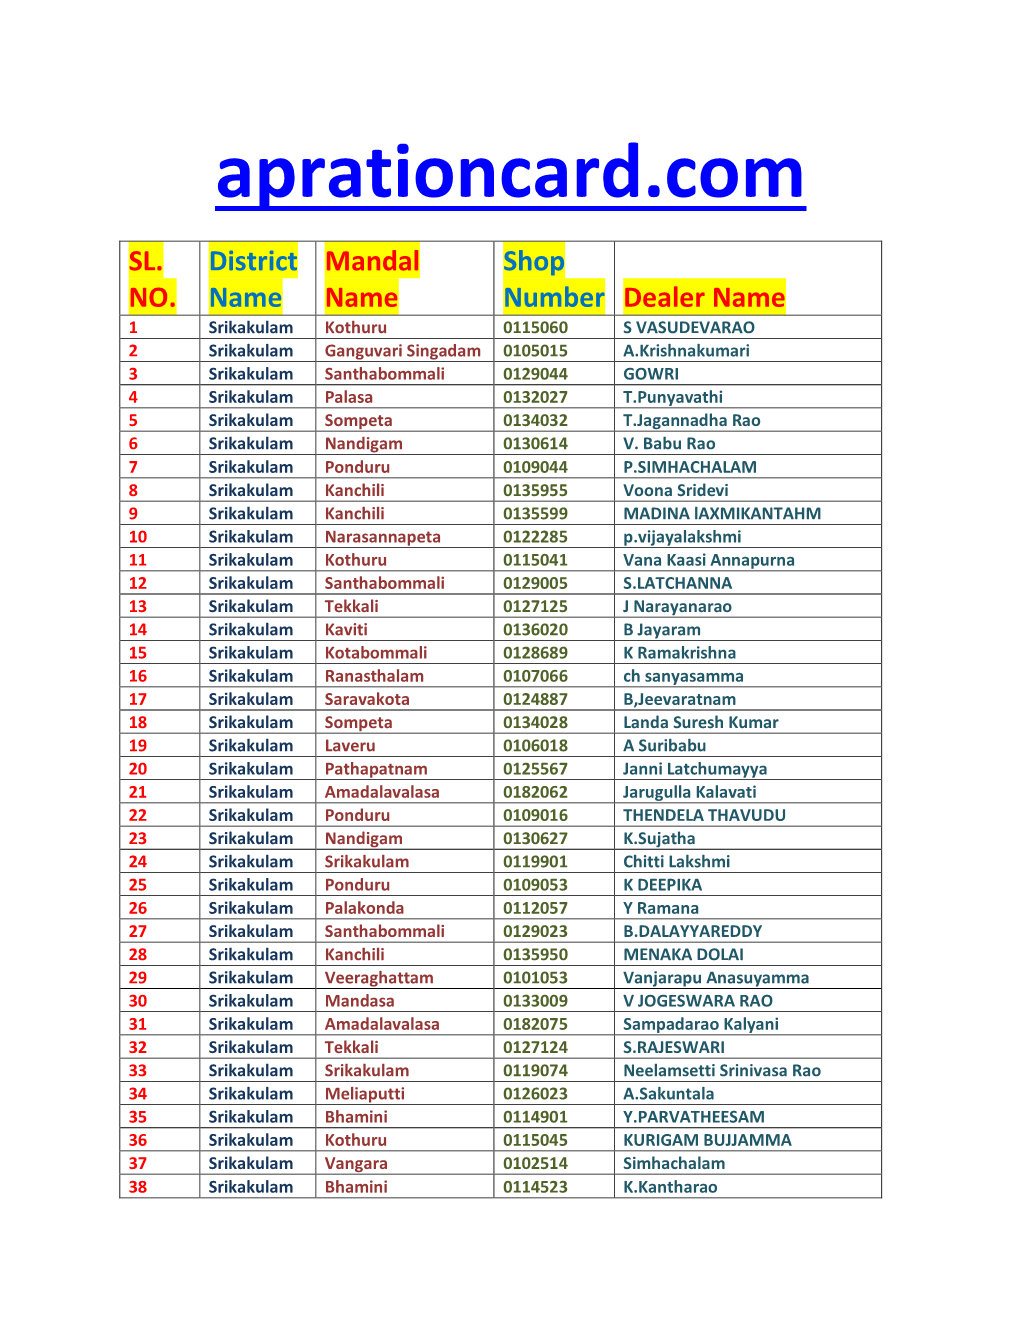 Aprationcard-Shop-Search.Pdf